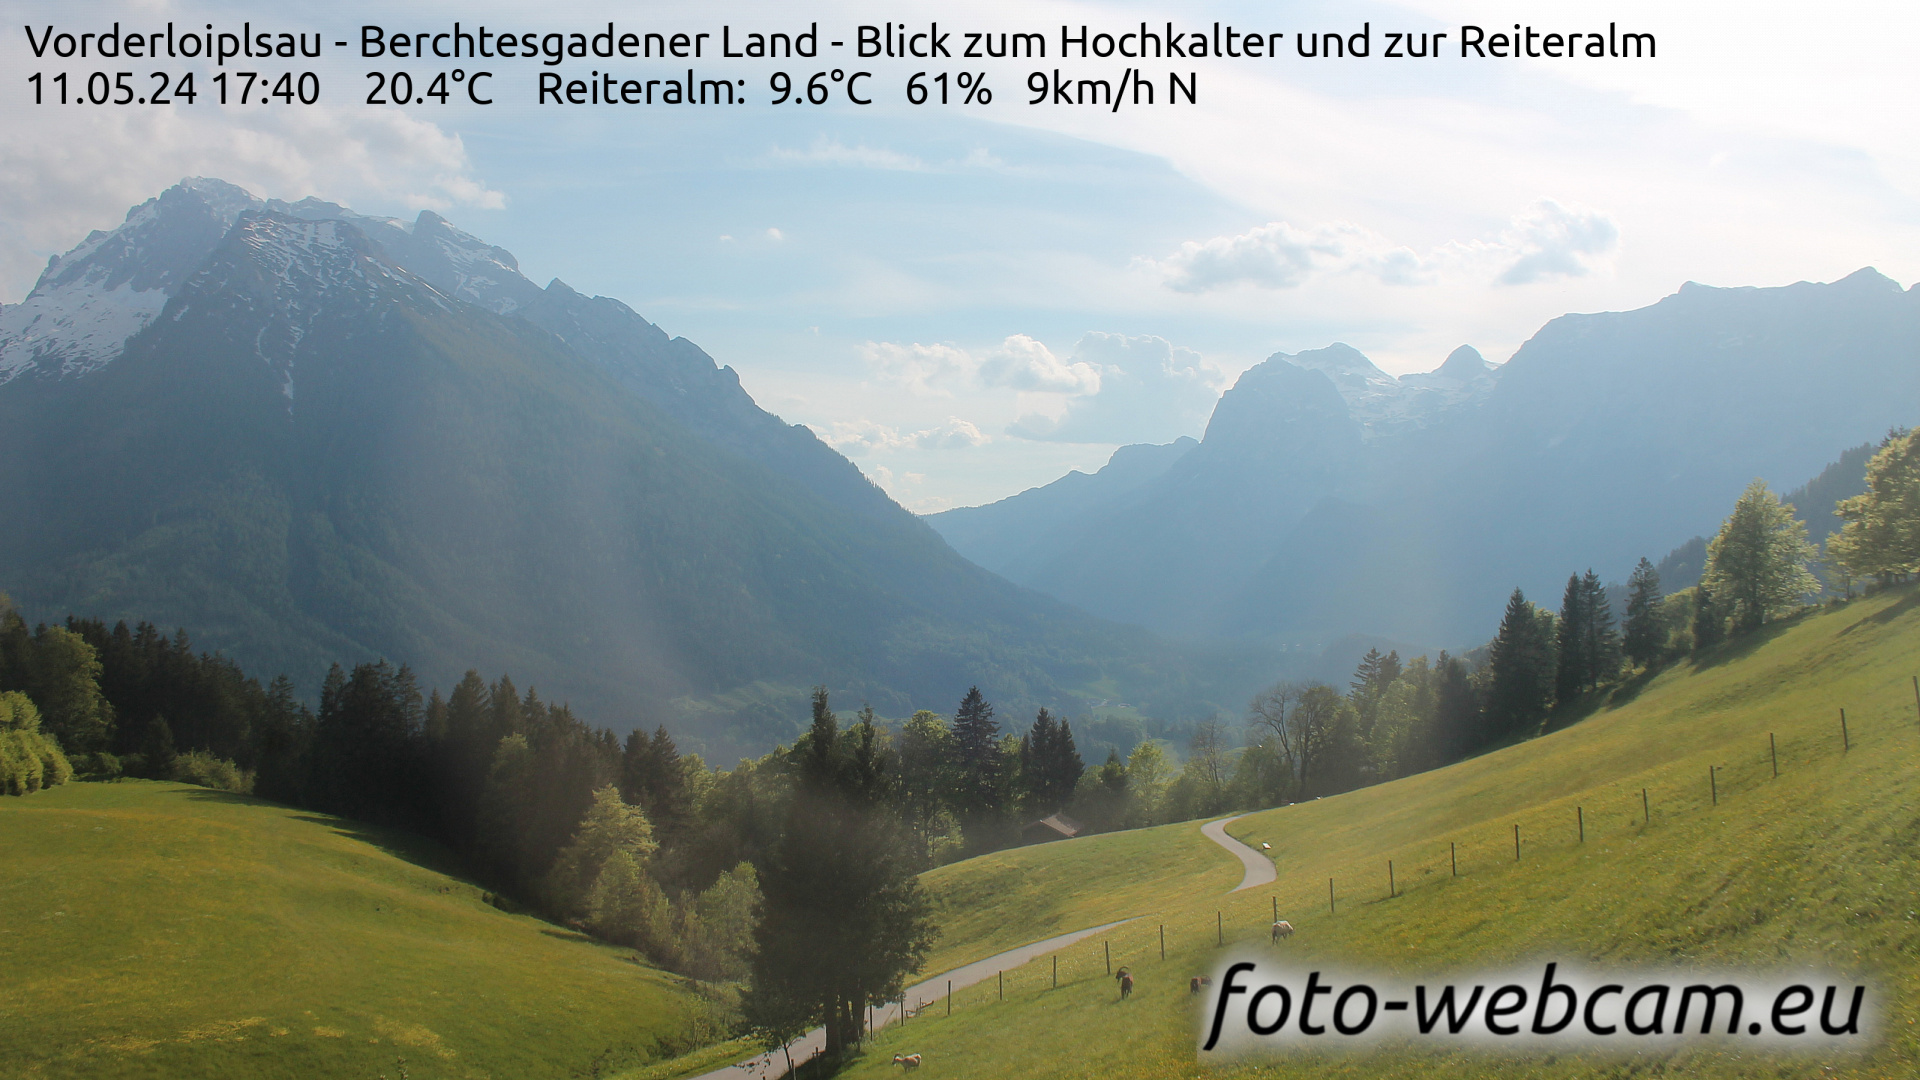 Ramsau bei Berchtesgaden Thu. 17:48